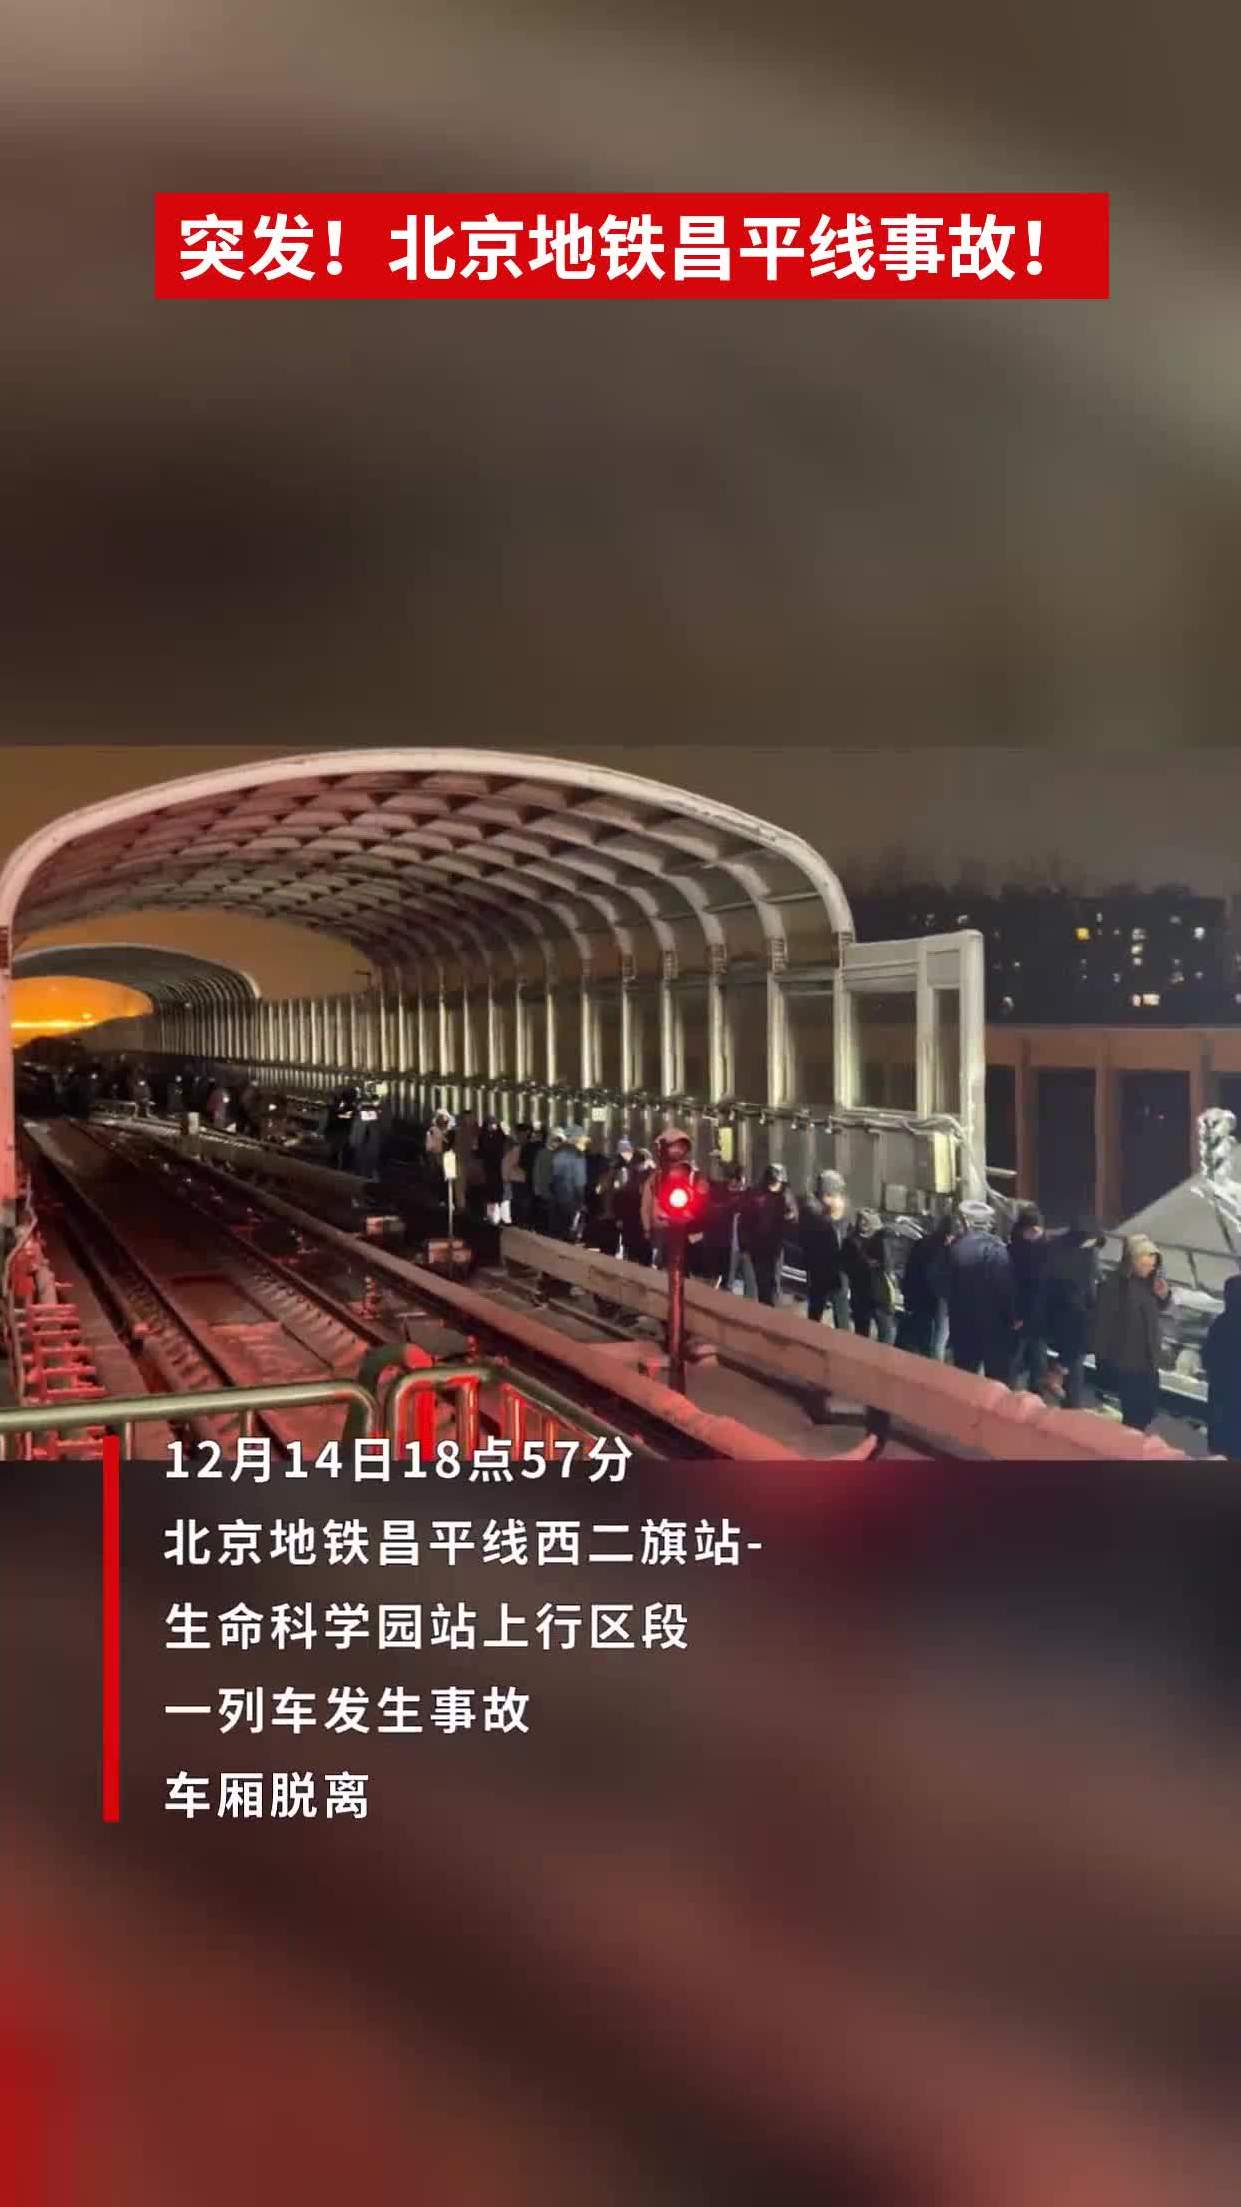 北京地铁昌平线事故!